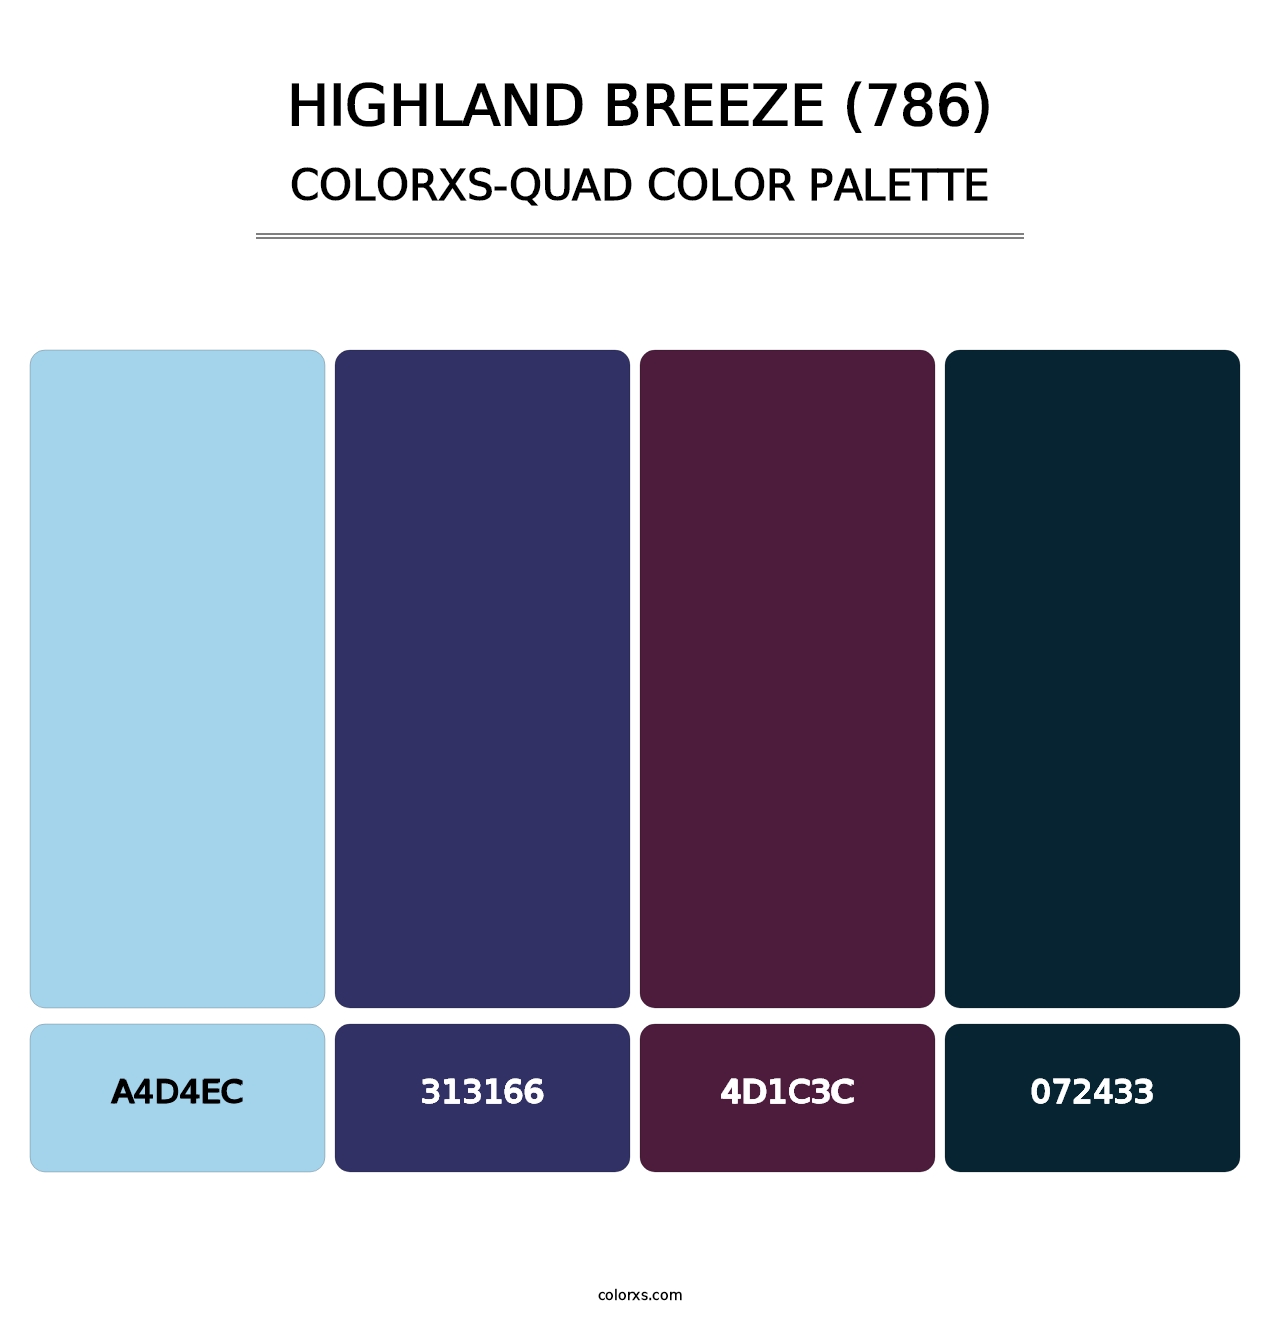 Highland Breeze (786) - Colorxs Quad Palette